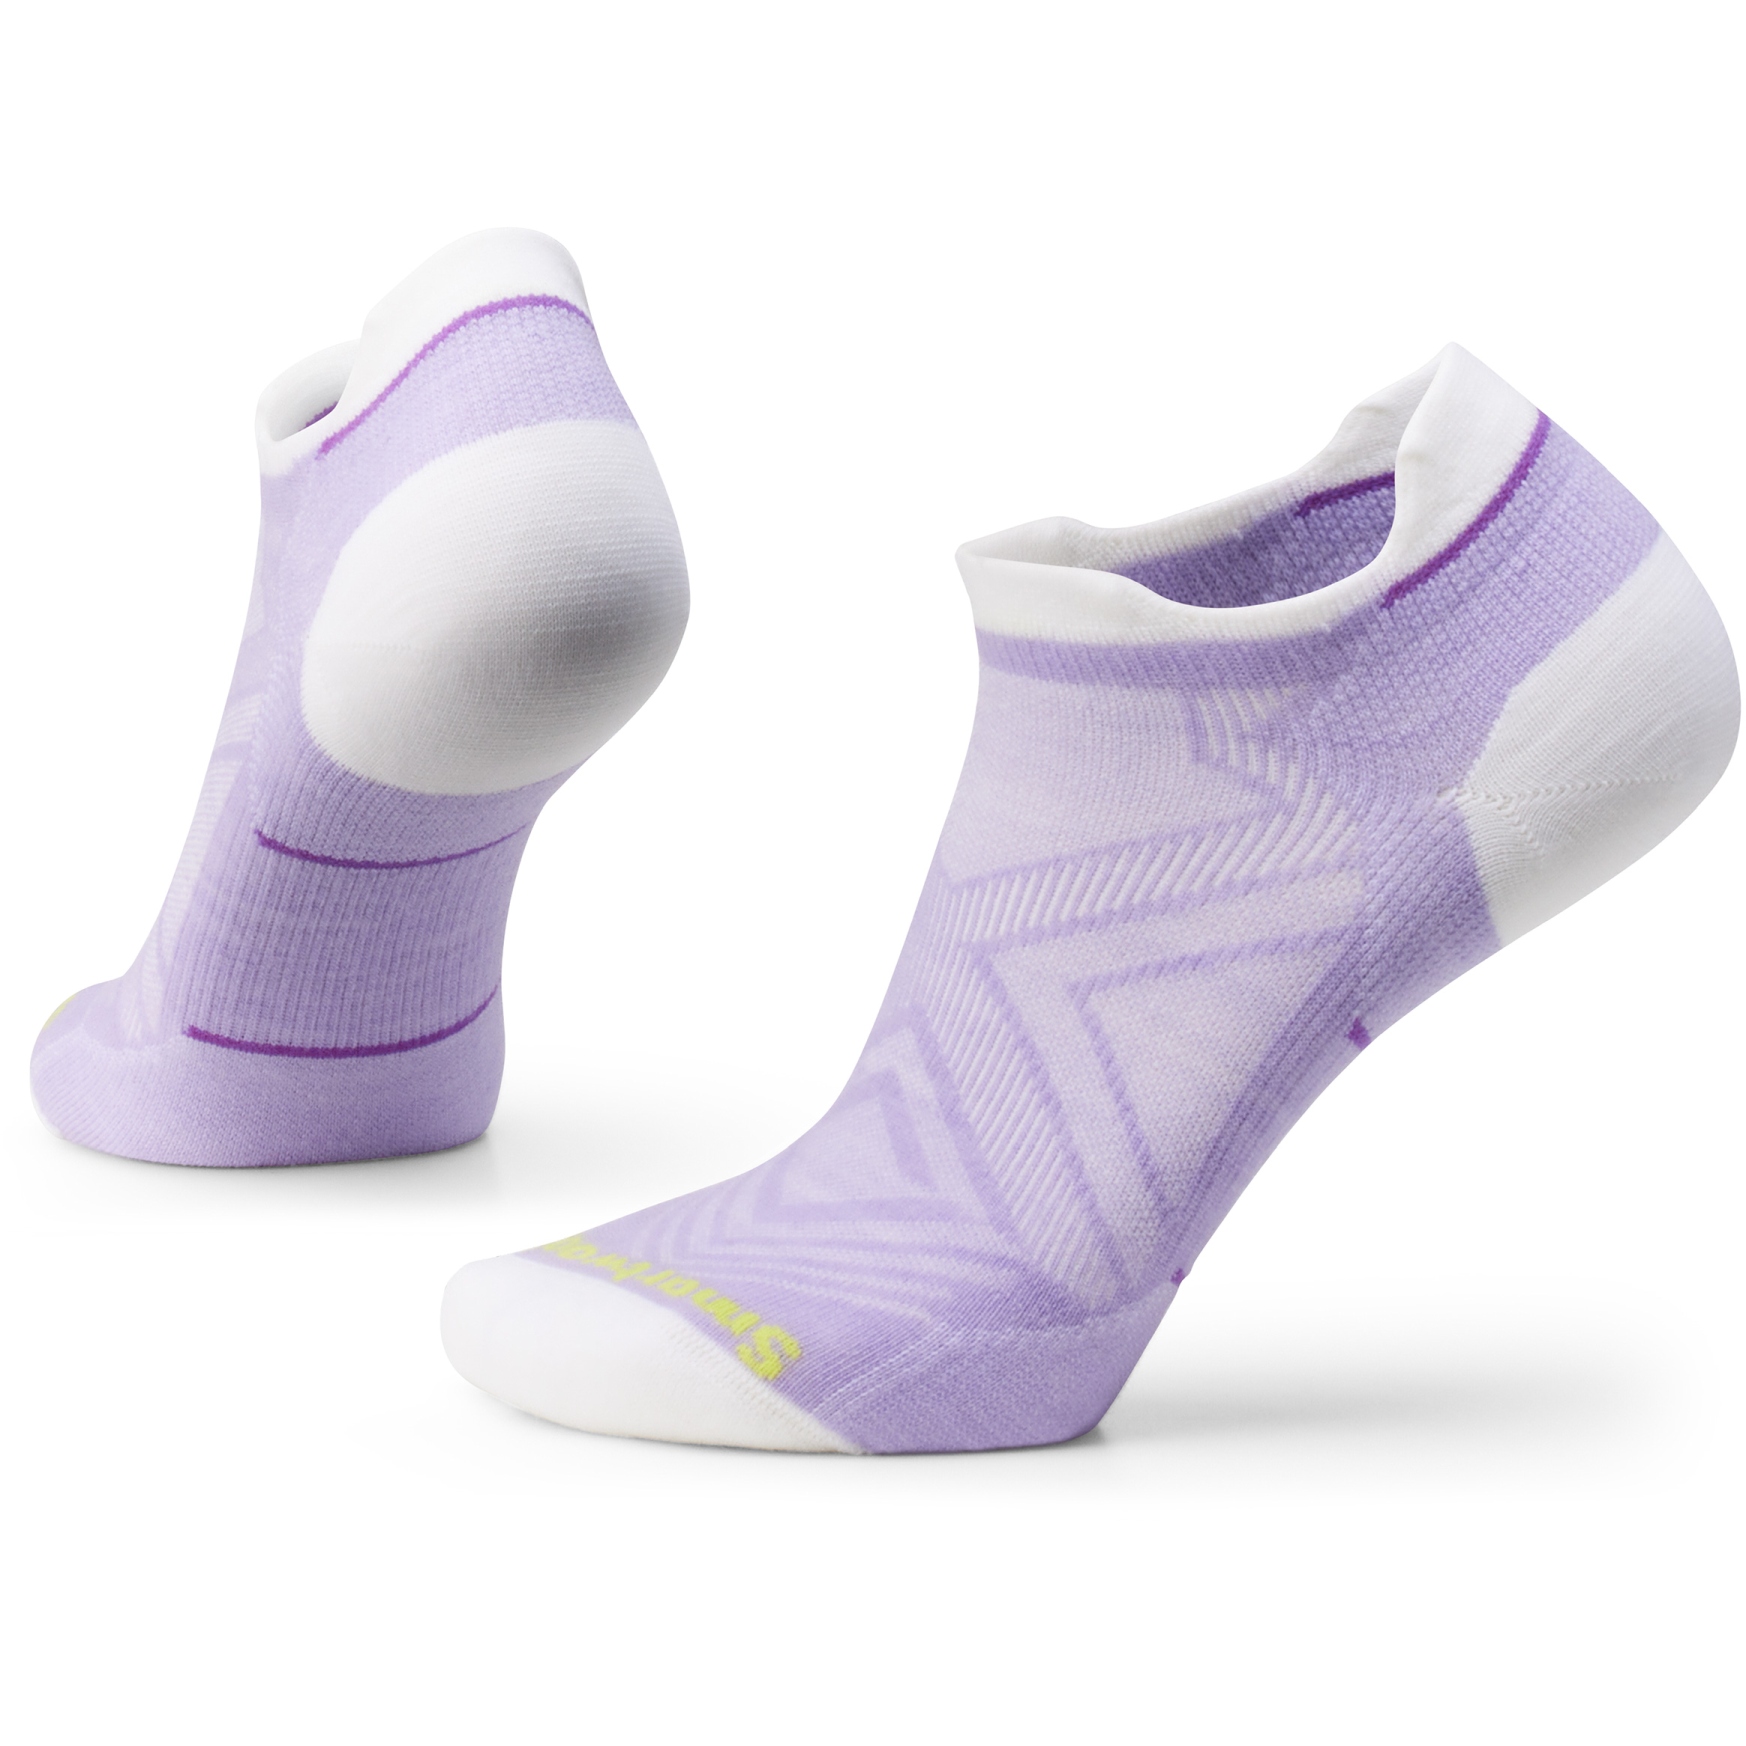 Produktbild von SmartWool Zero Cushion Low Ankle Laufsocken Damen - L46 ultra violet